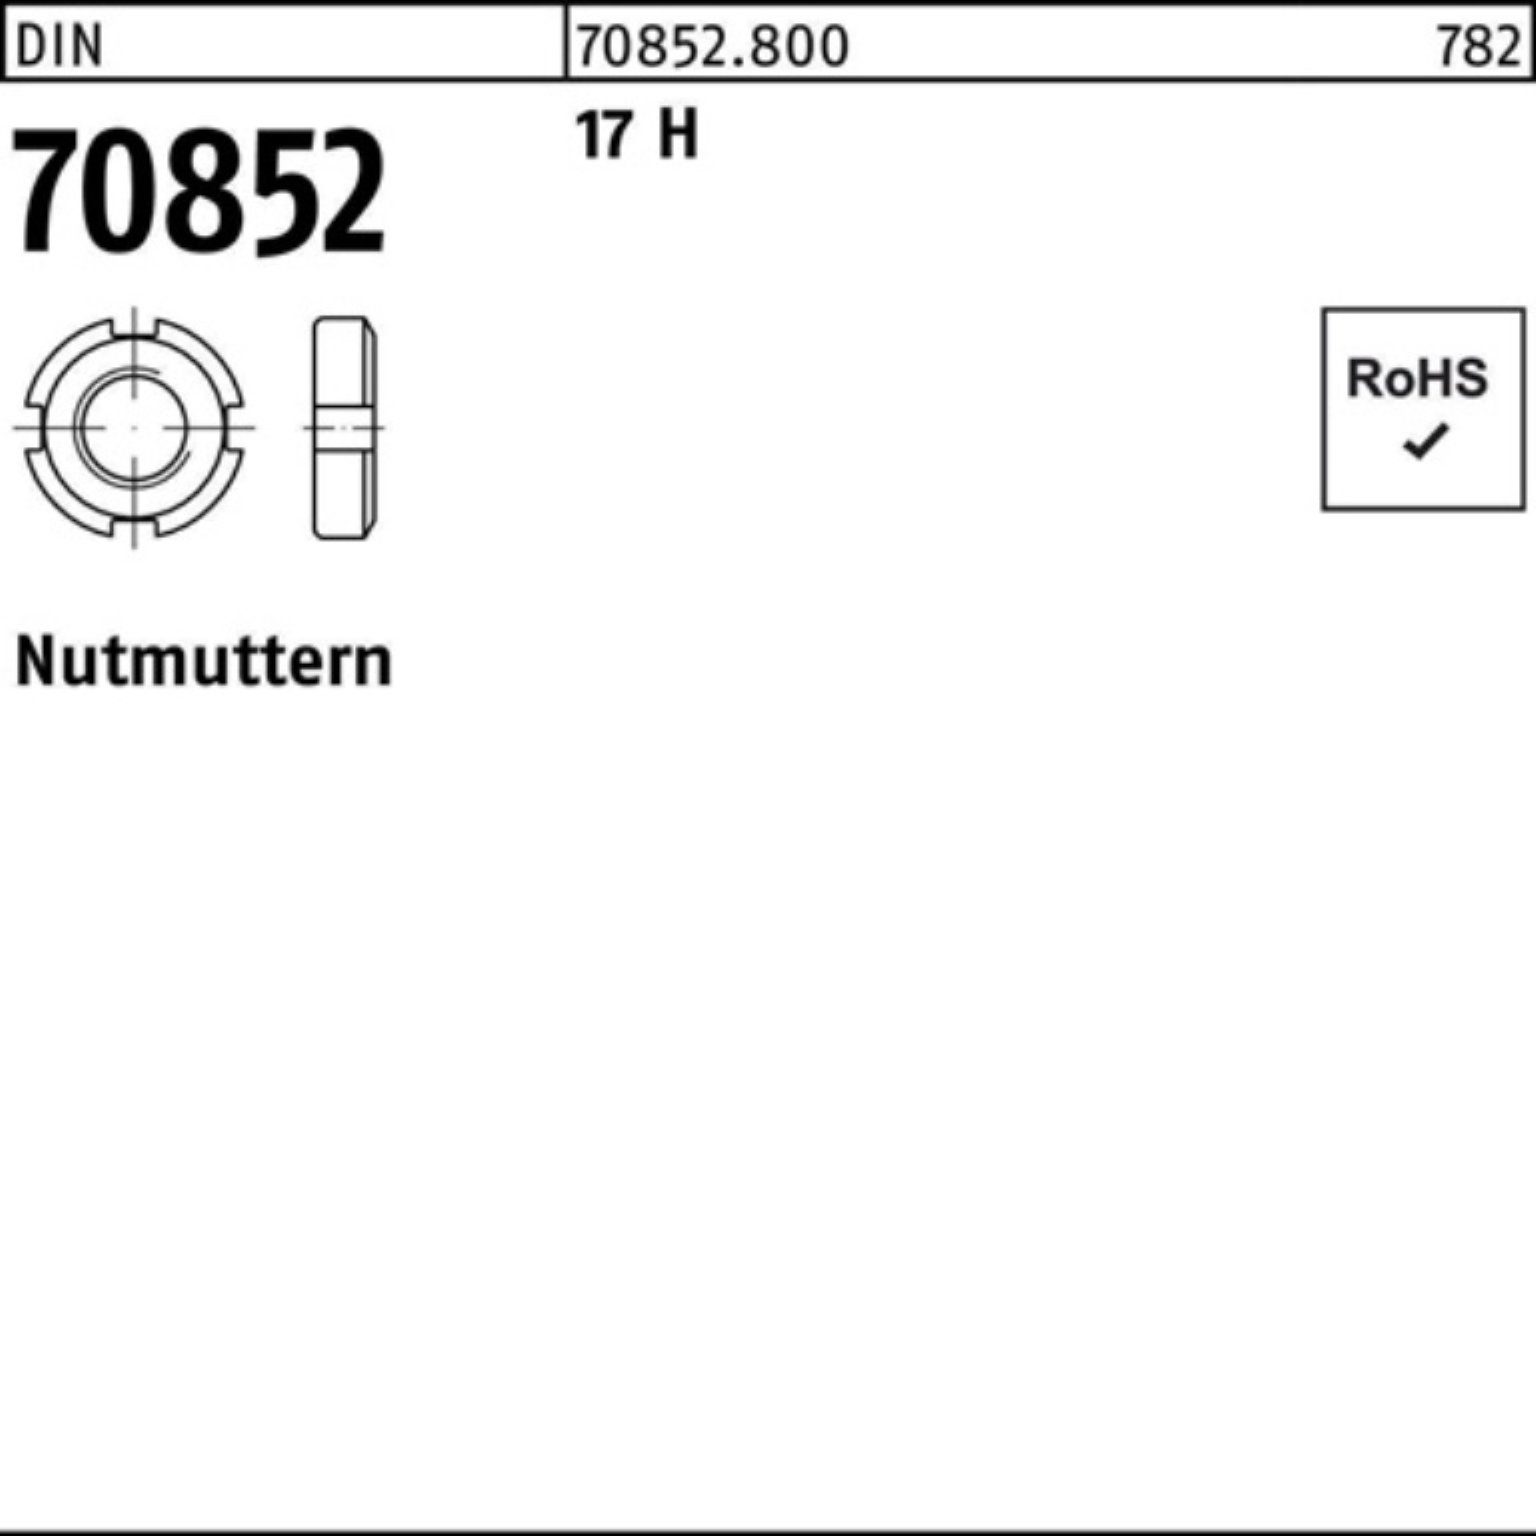 schnelle Lieferung Reyher Nutmutter 1 70852 Pack 100er 17 H M50x DIN H 17 N DIN 70852 Nutmutter Stück 1,5